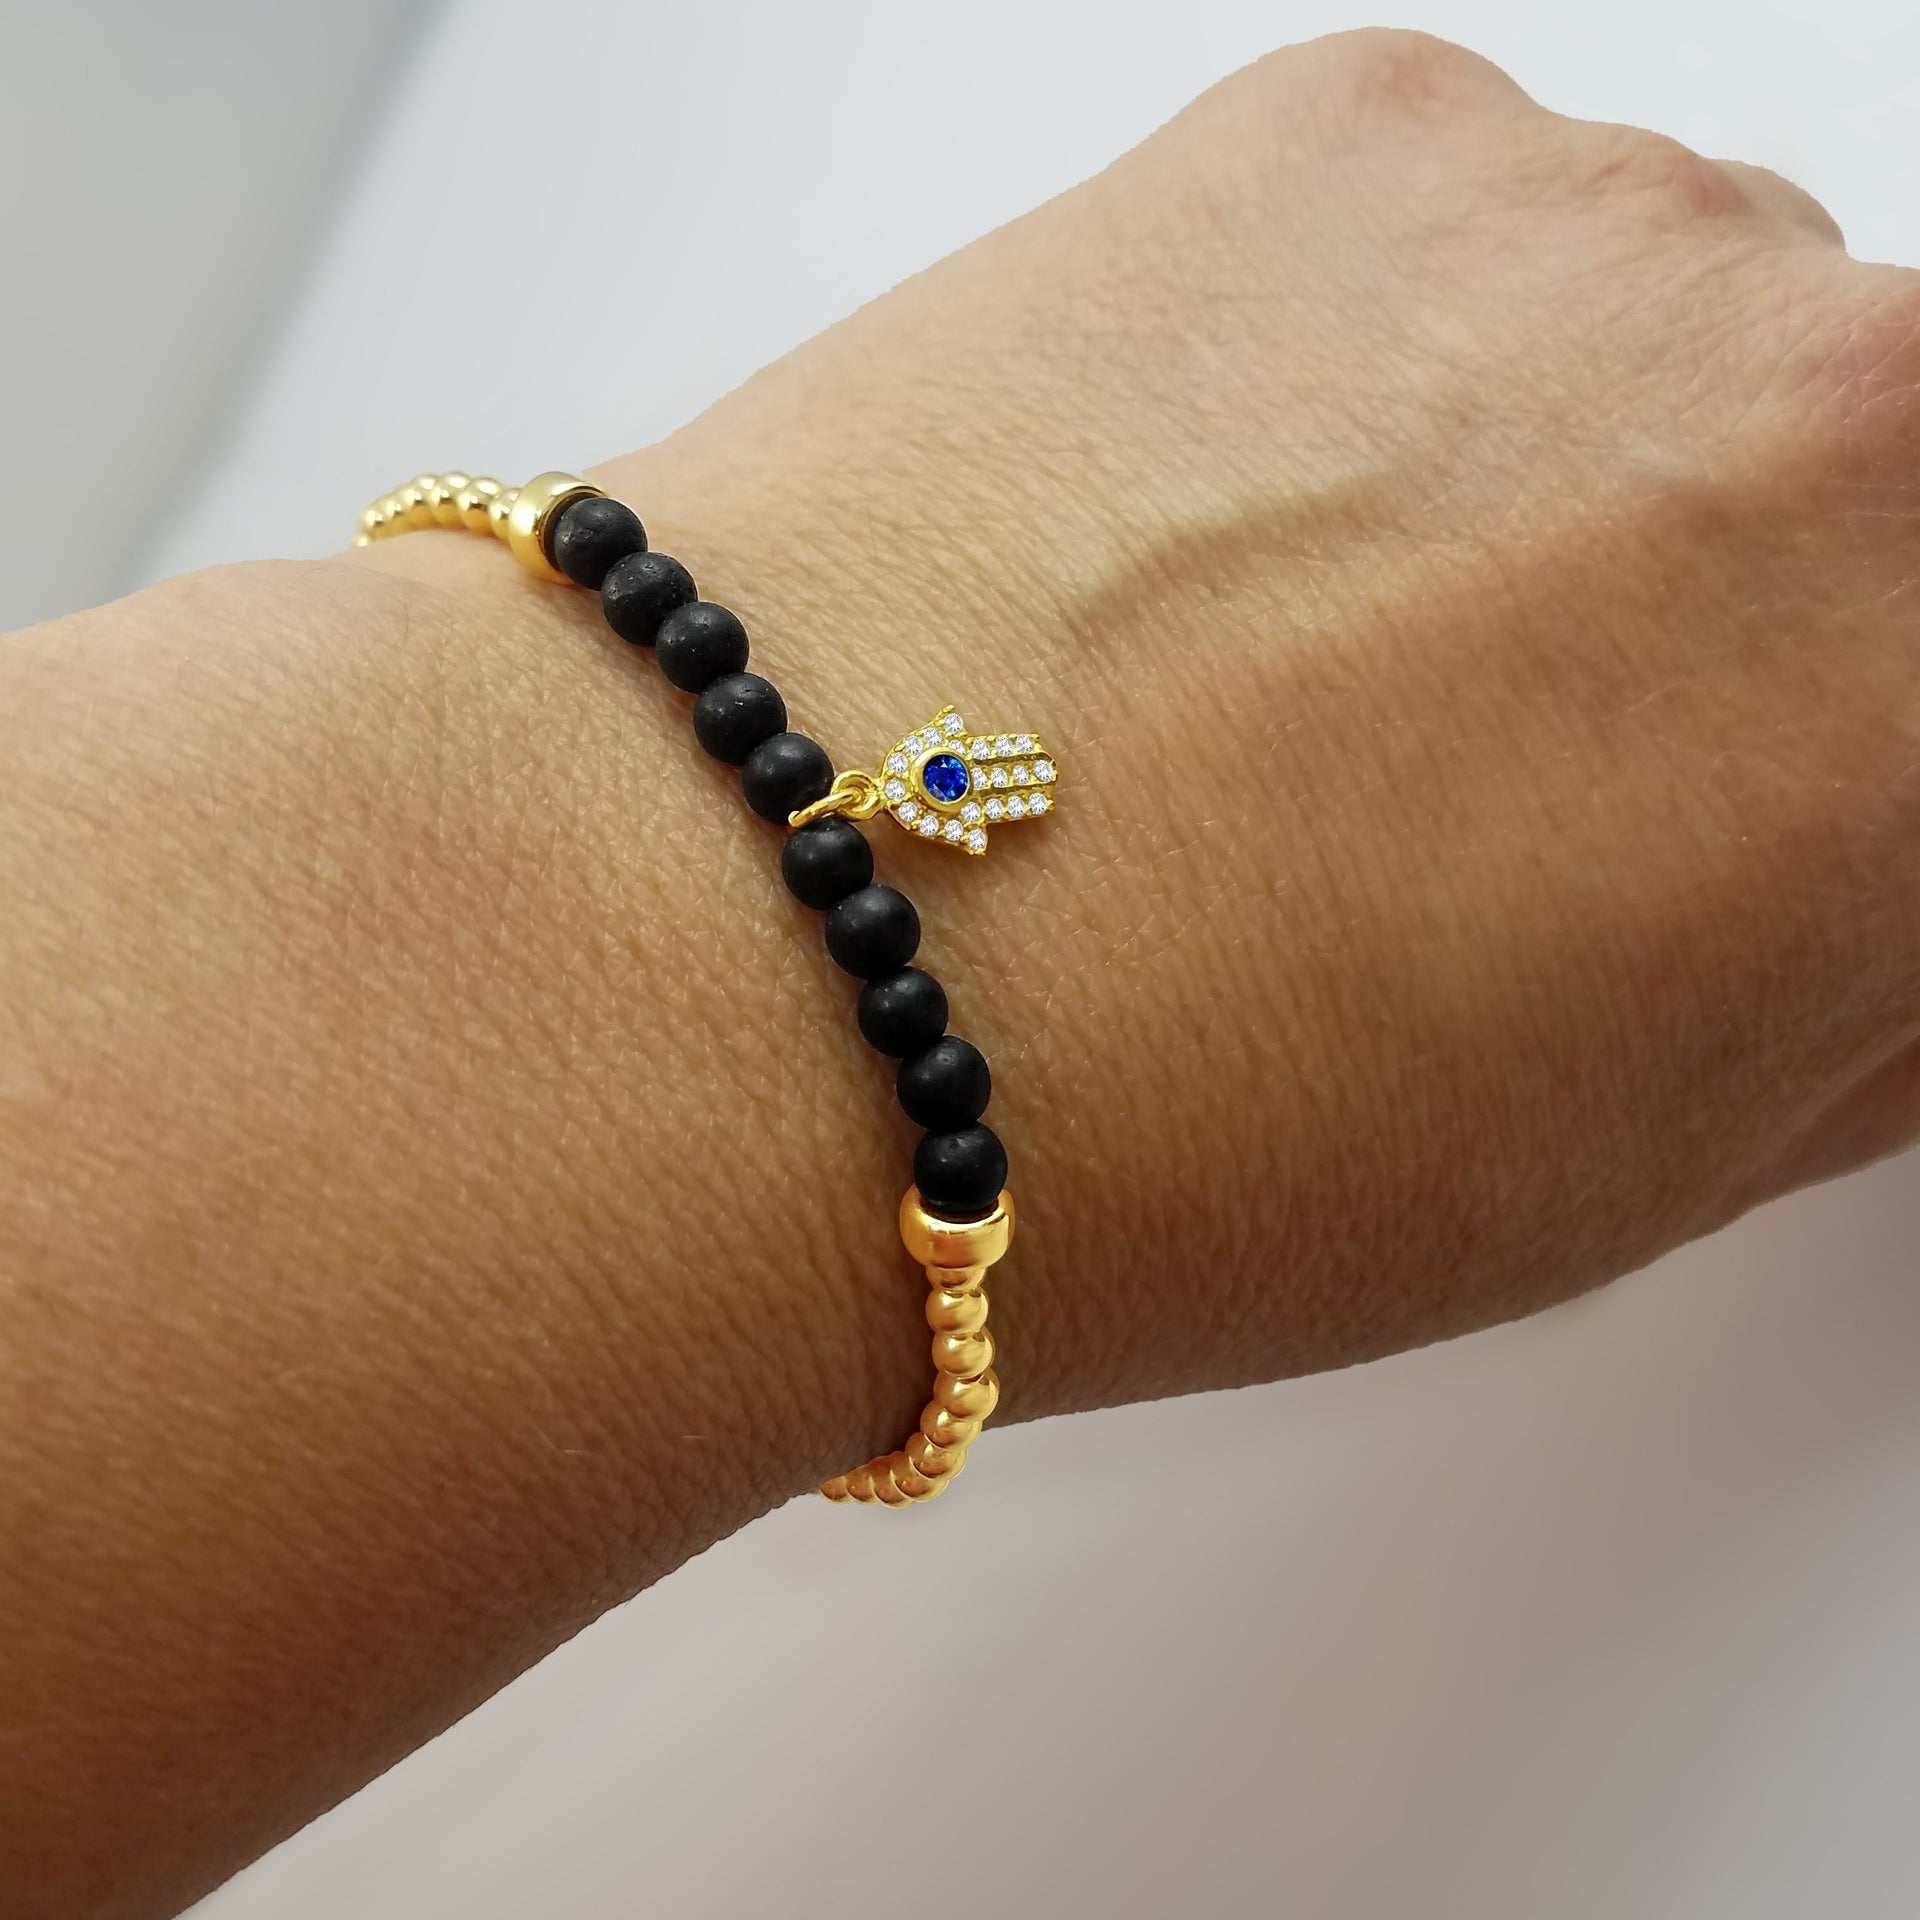 Hamsa Beaded Bracelet - Alef Bet Jewelry by Paula